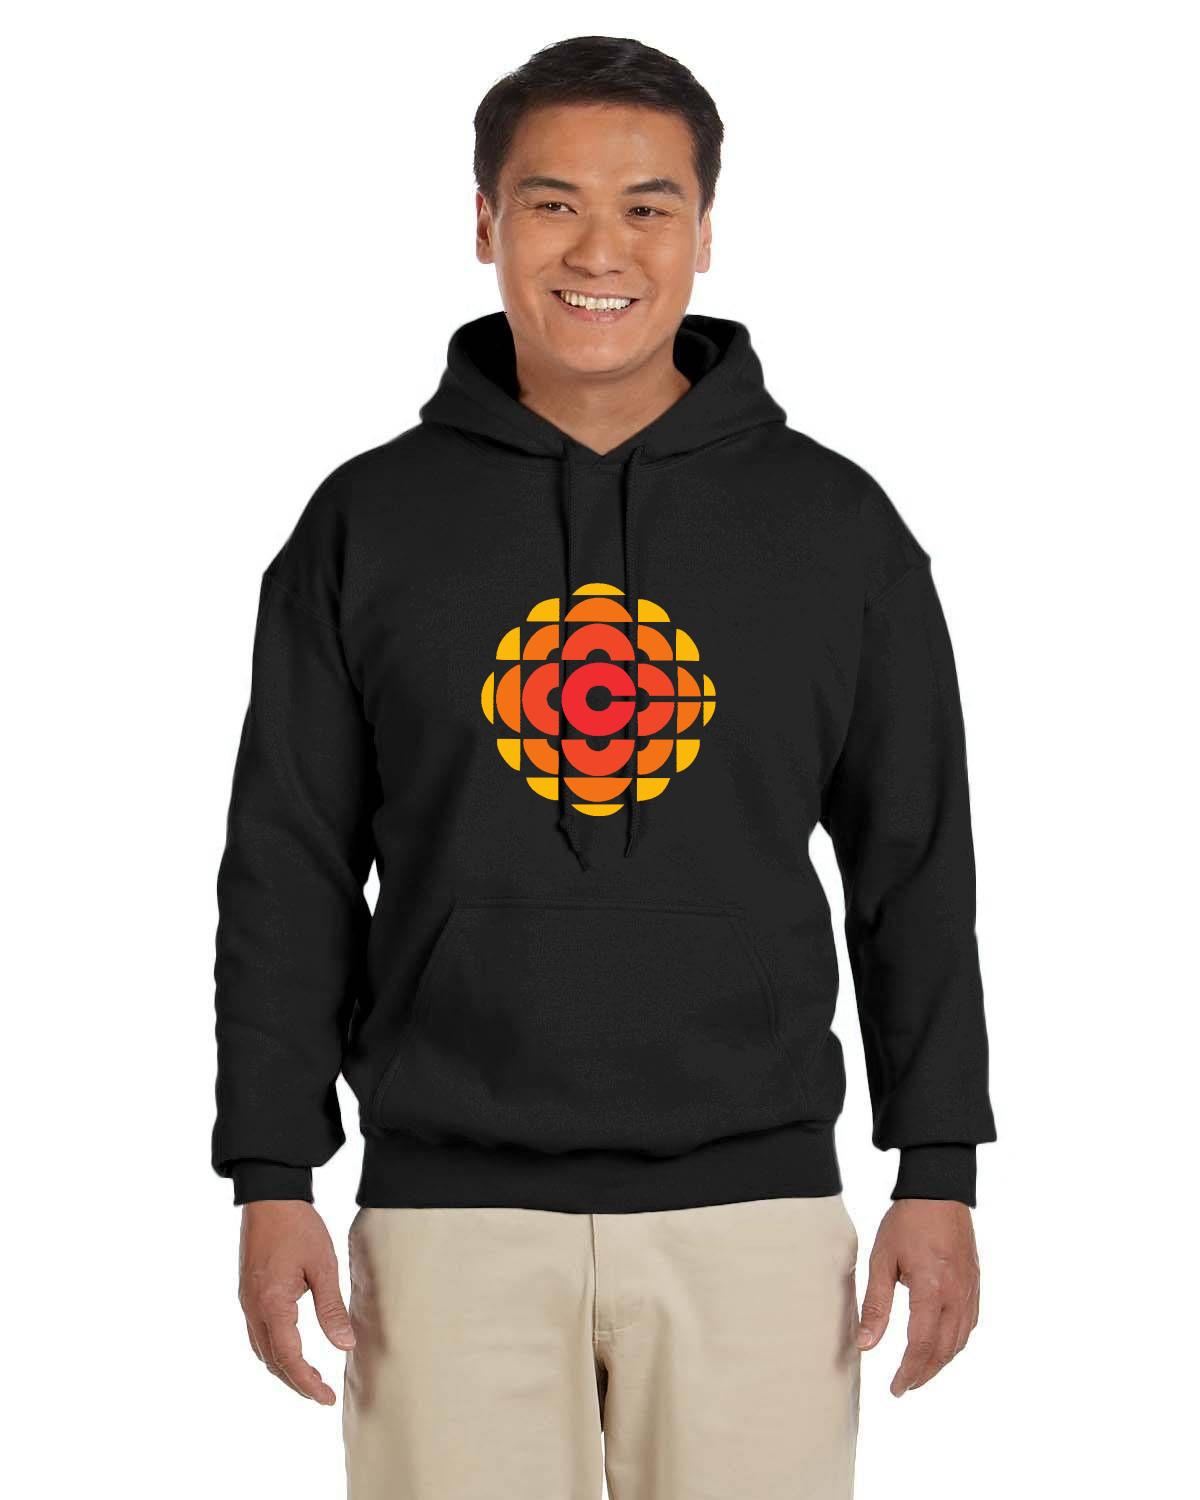 CBC 70's Retro Gem Logo Hoodie, Canadian Nostalgia, Officially Licensed CBC Apparel